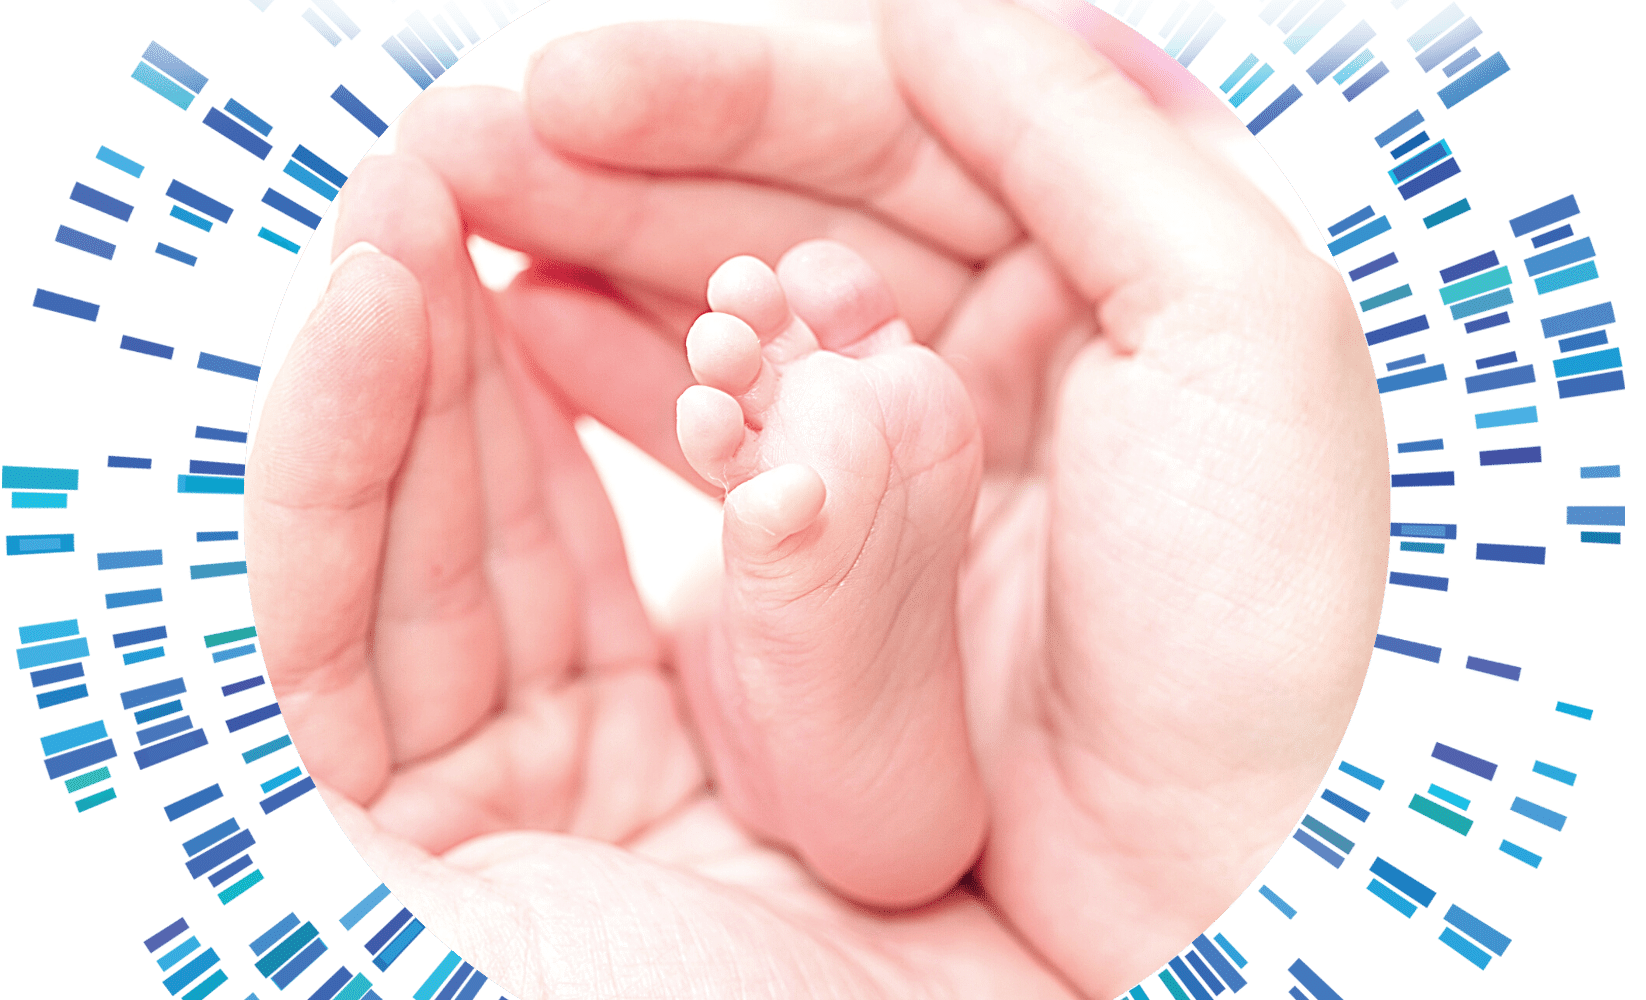 newborn foot cradled in parents' hands